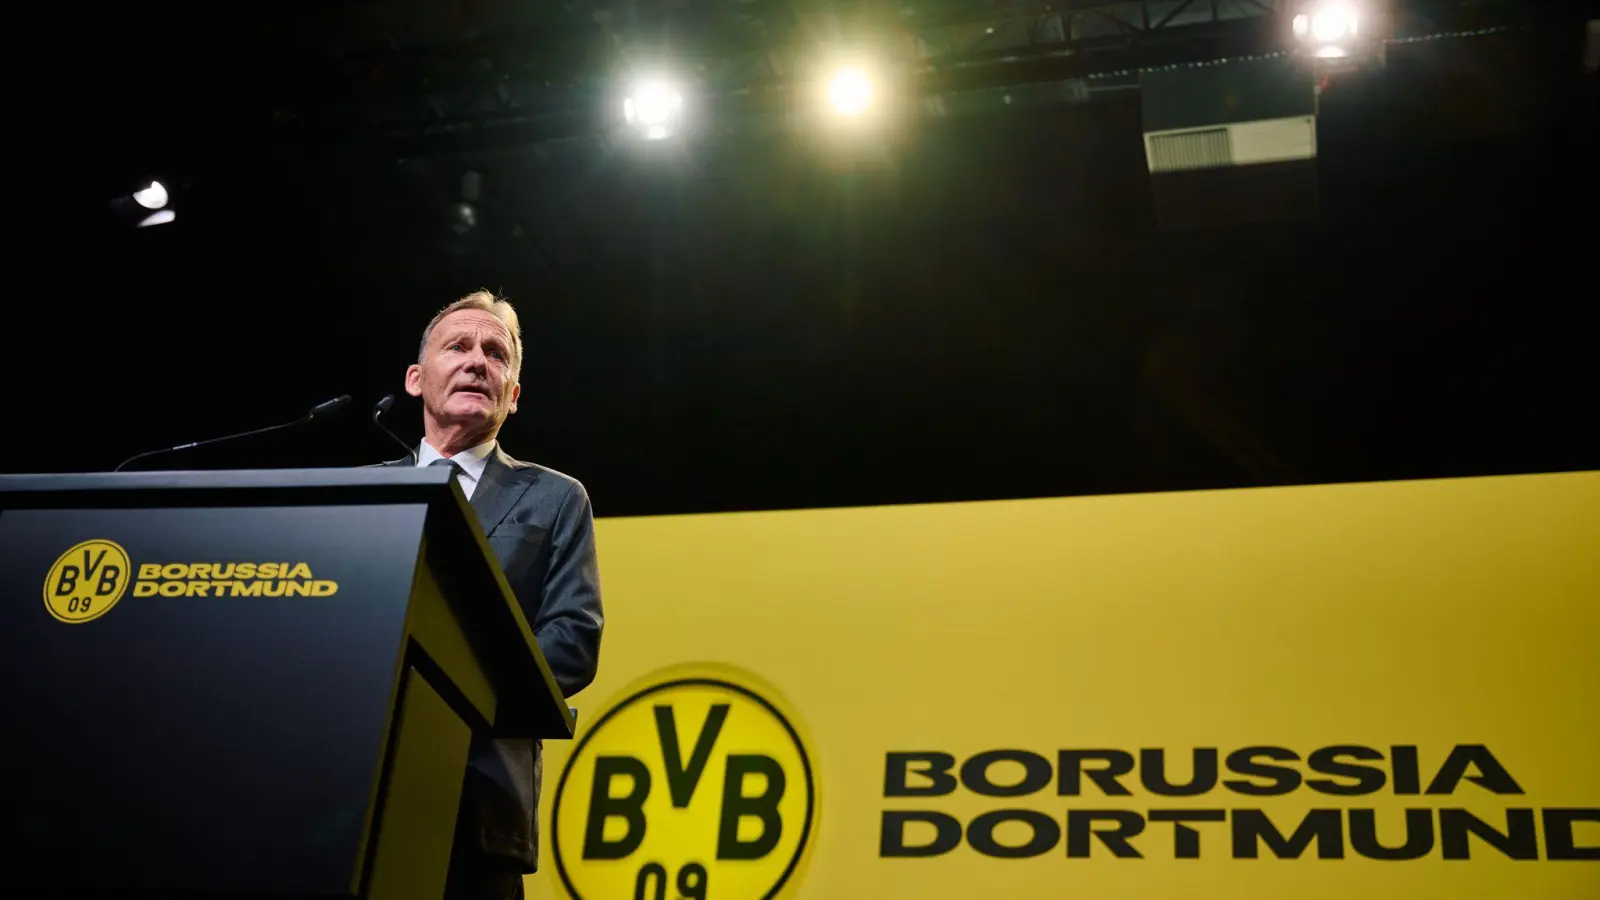 BVB-Geschäftsführer Hans-Joachim Watzke will Anfang des kommenden Jahres über seine Zukunft sprechen. (Foto: Bernd Thissen/dpa)